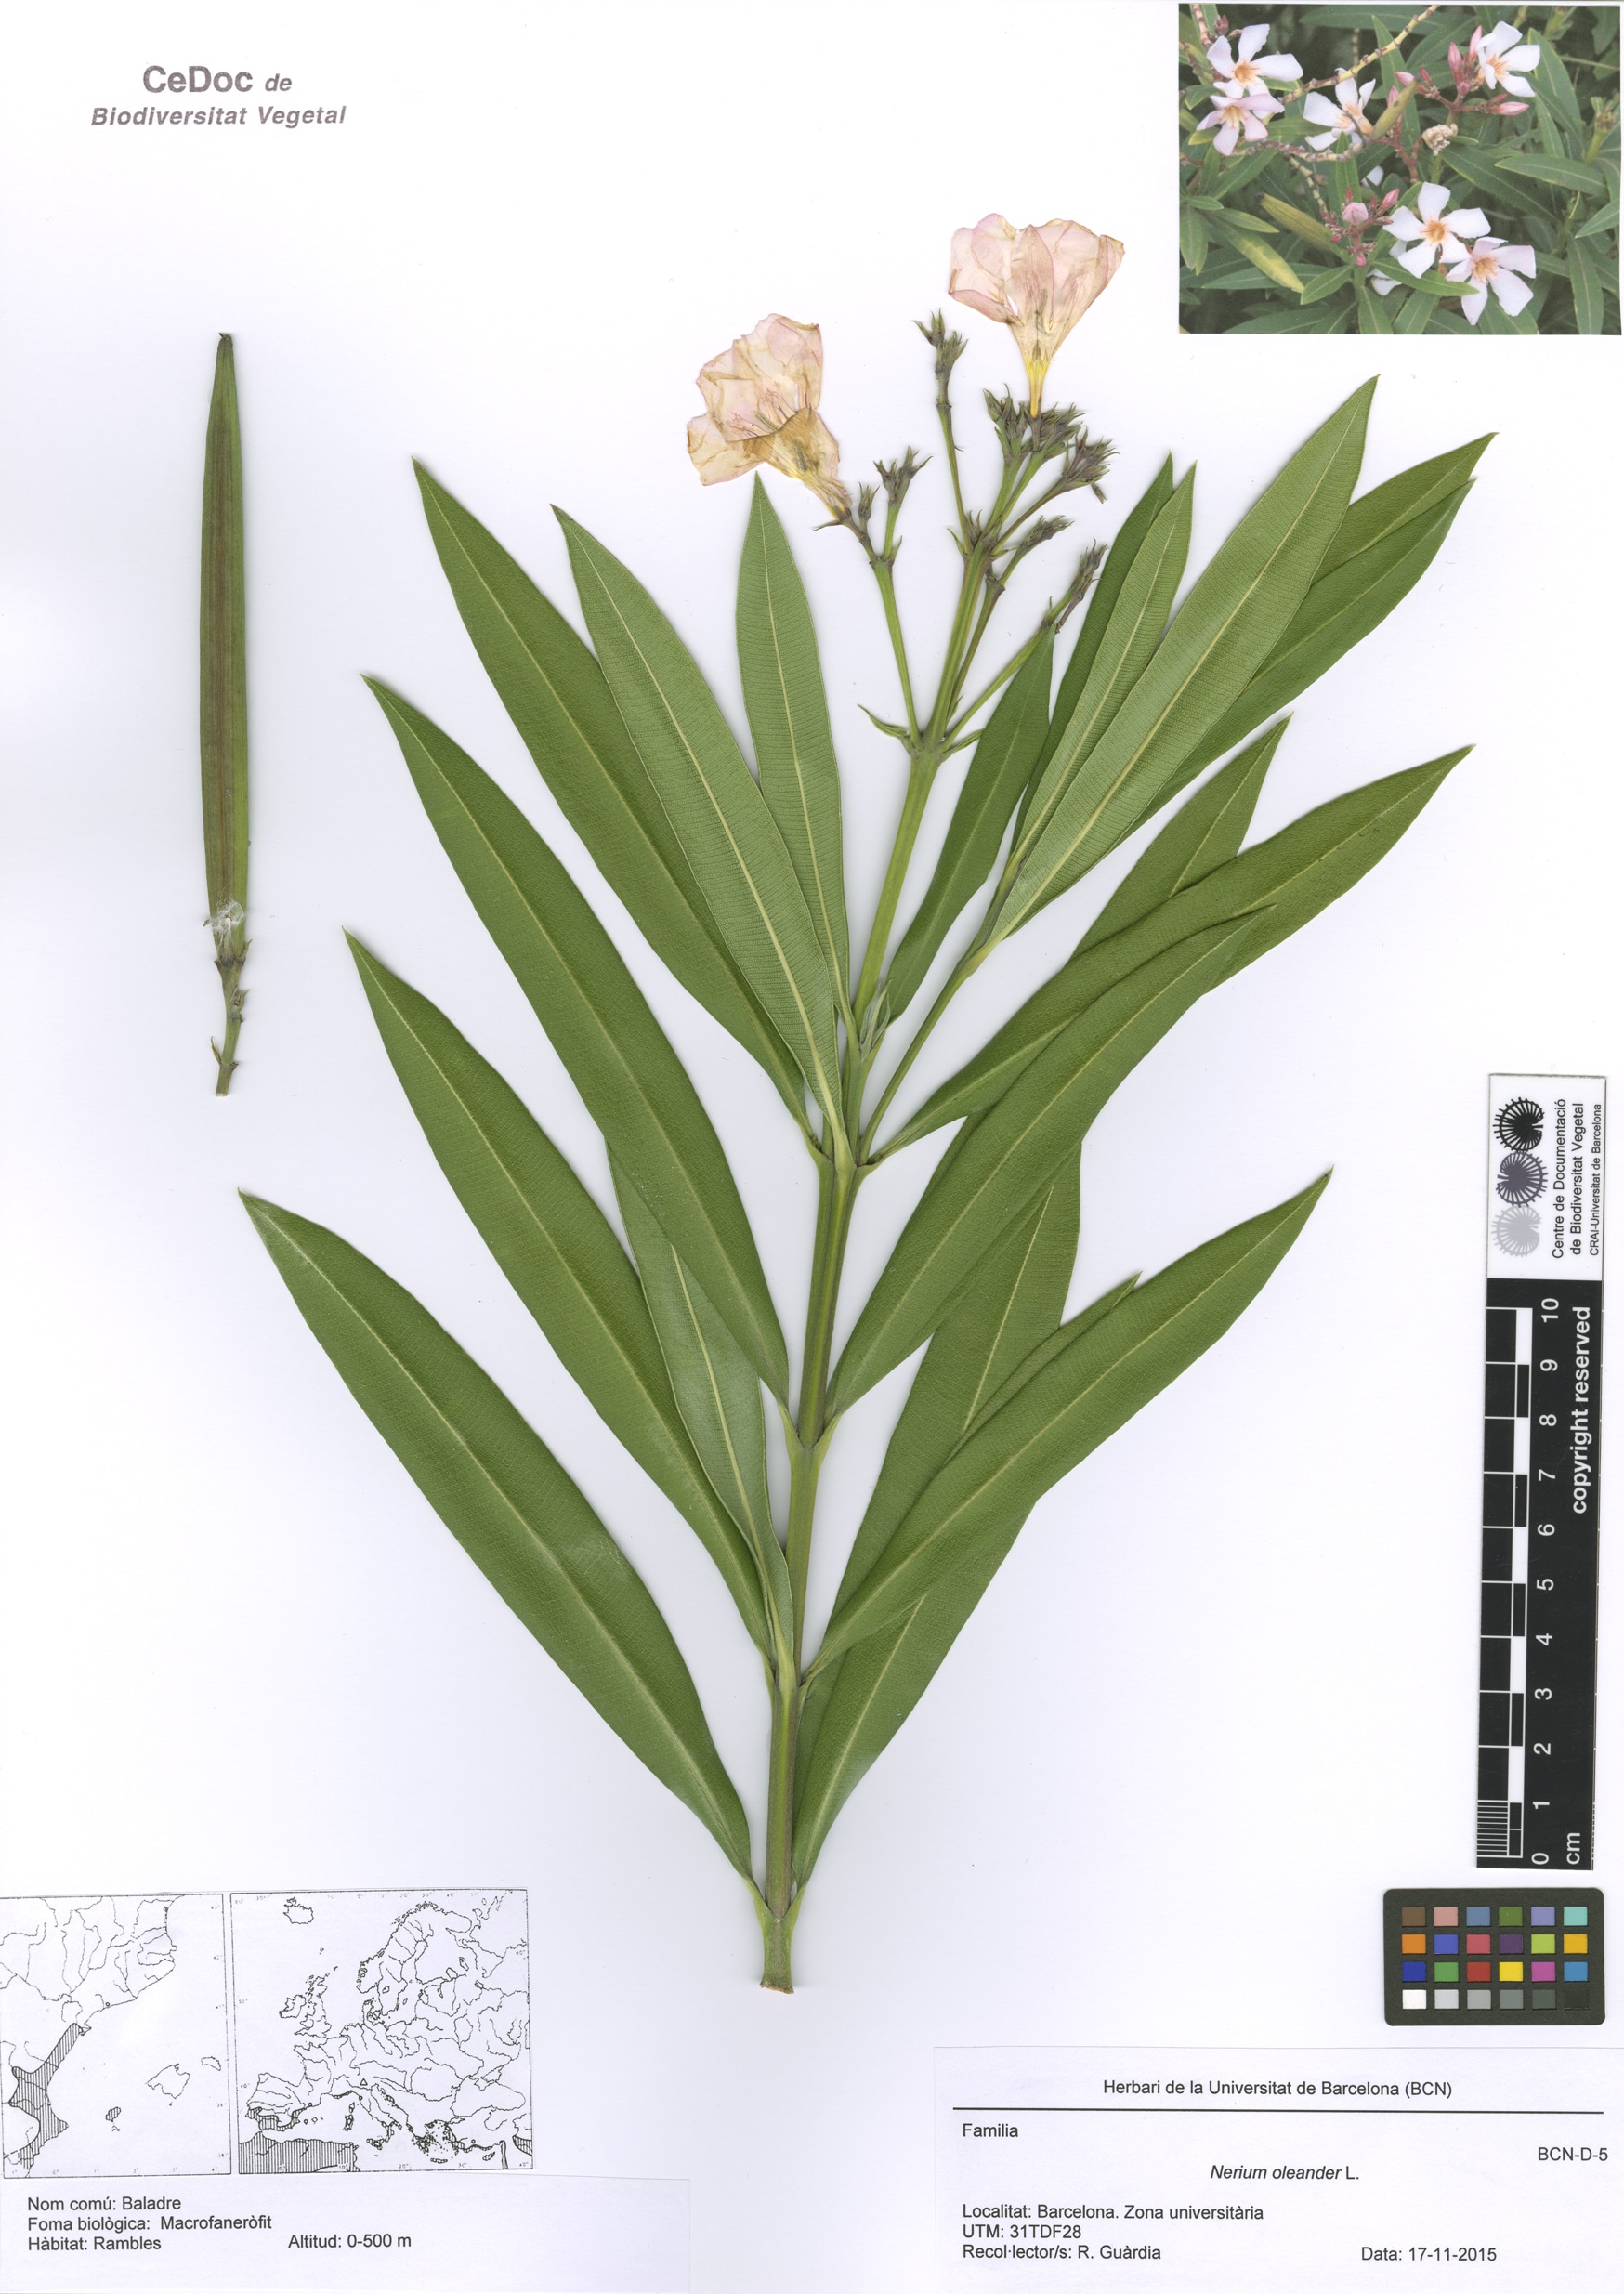 Nerium oleander L. (Baladre)